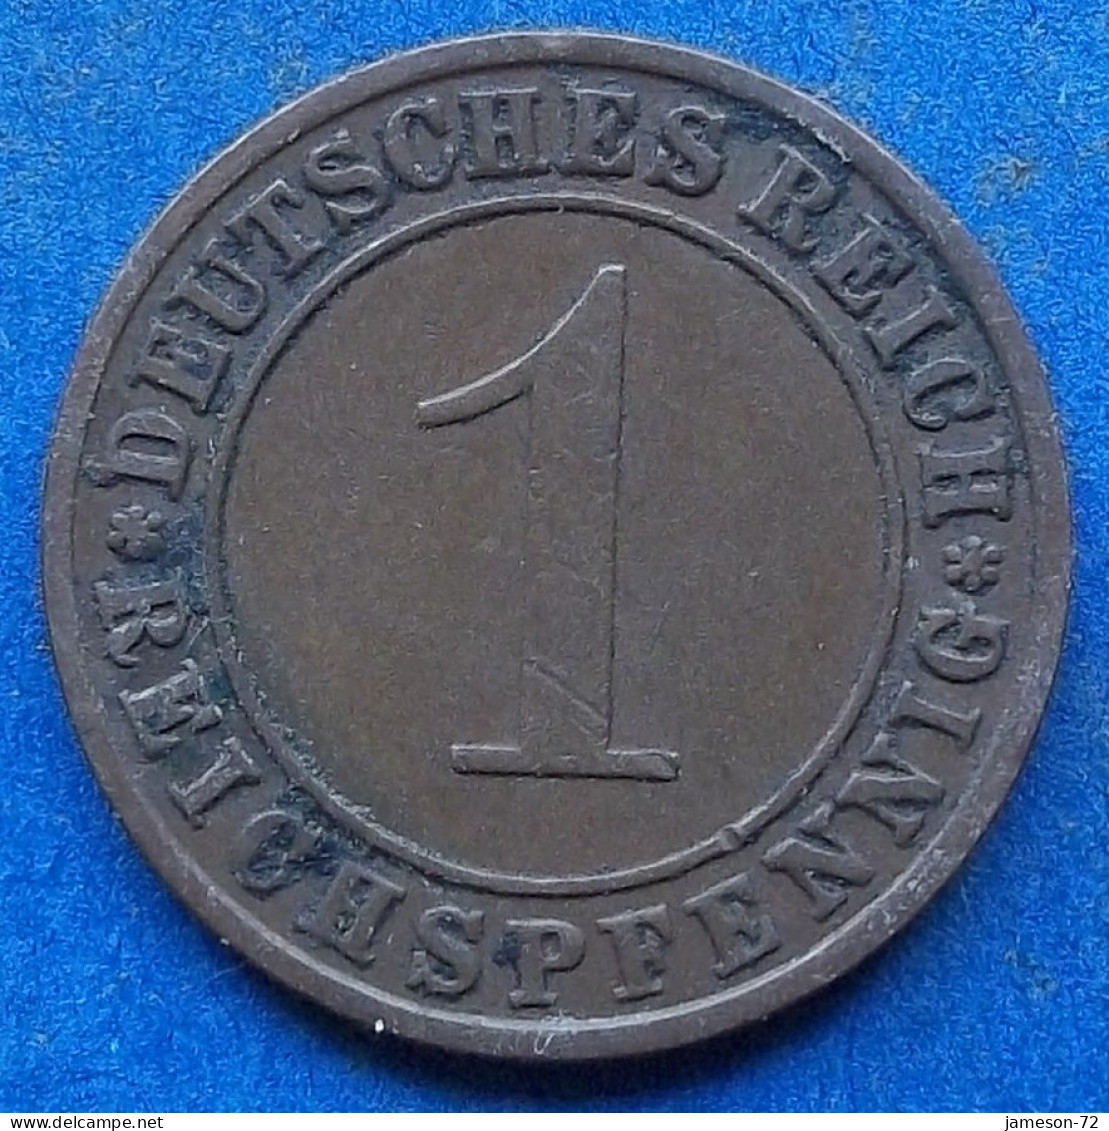 GERMANY - 1 Reichspfennig 1930 A KM# 37 Weimar Republic Reichsmark Coinage (1924-1938) - Edelweiss Coins - 1 Renten- & 1 Reichspfennig